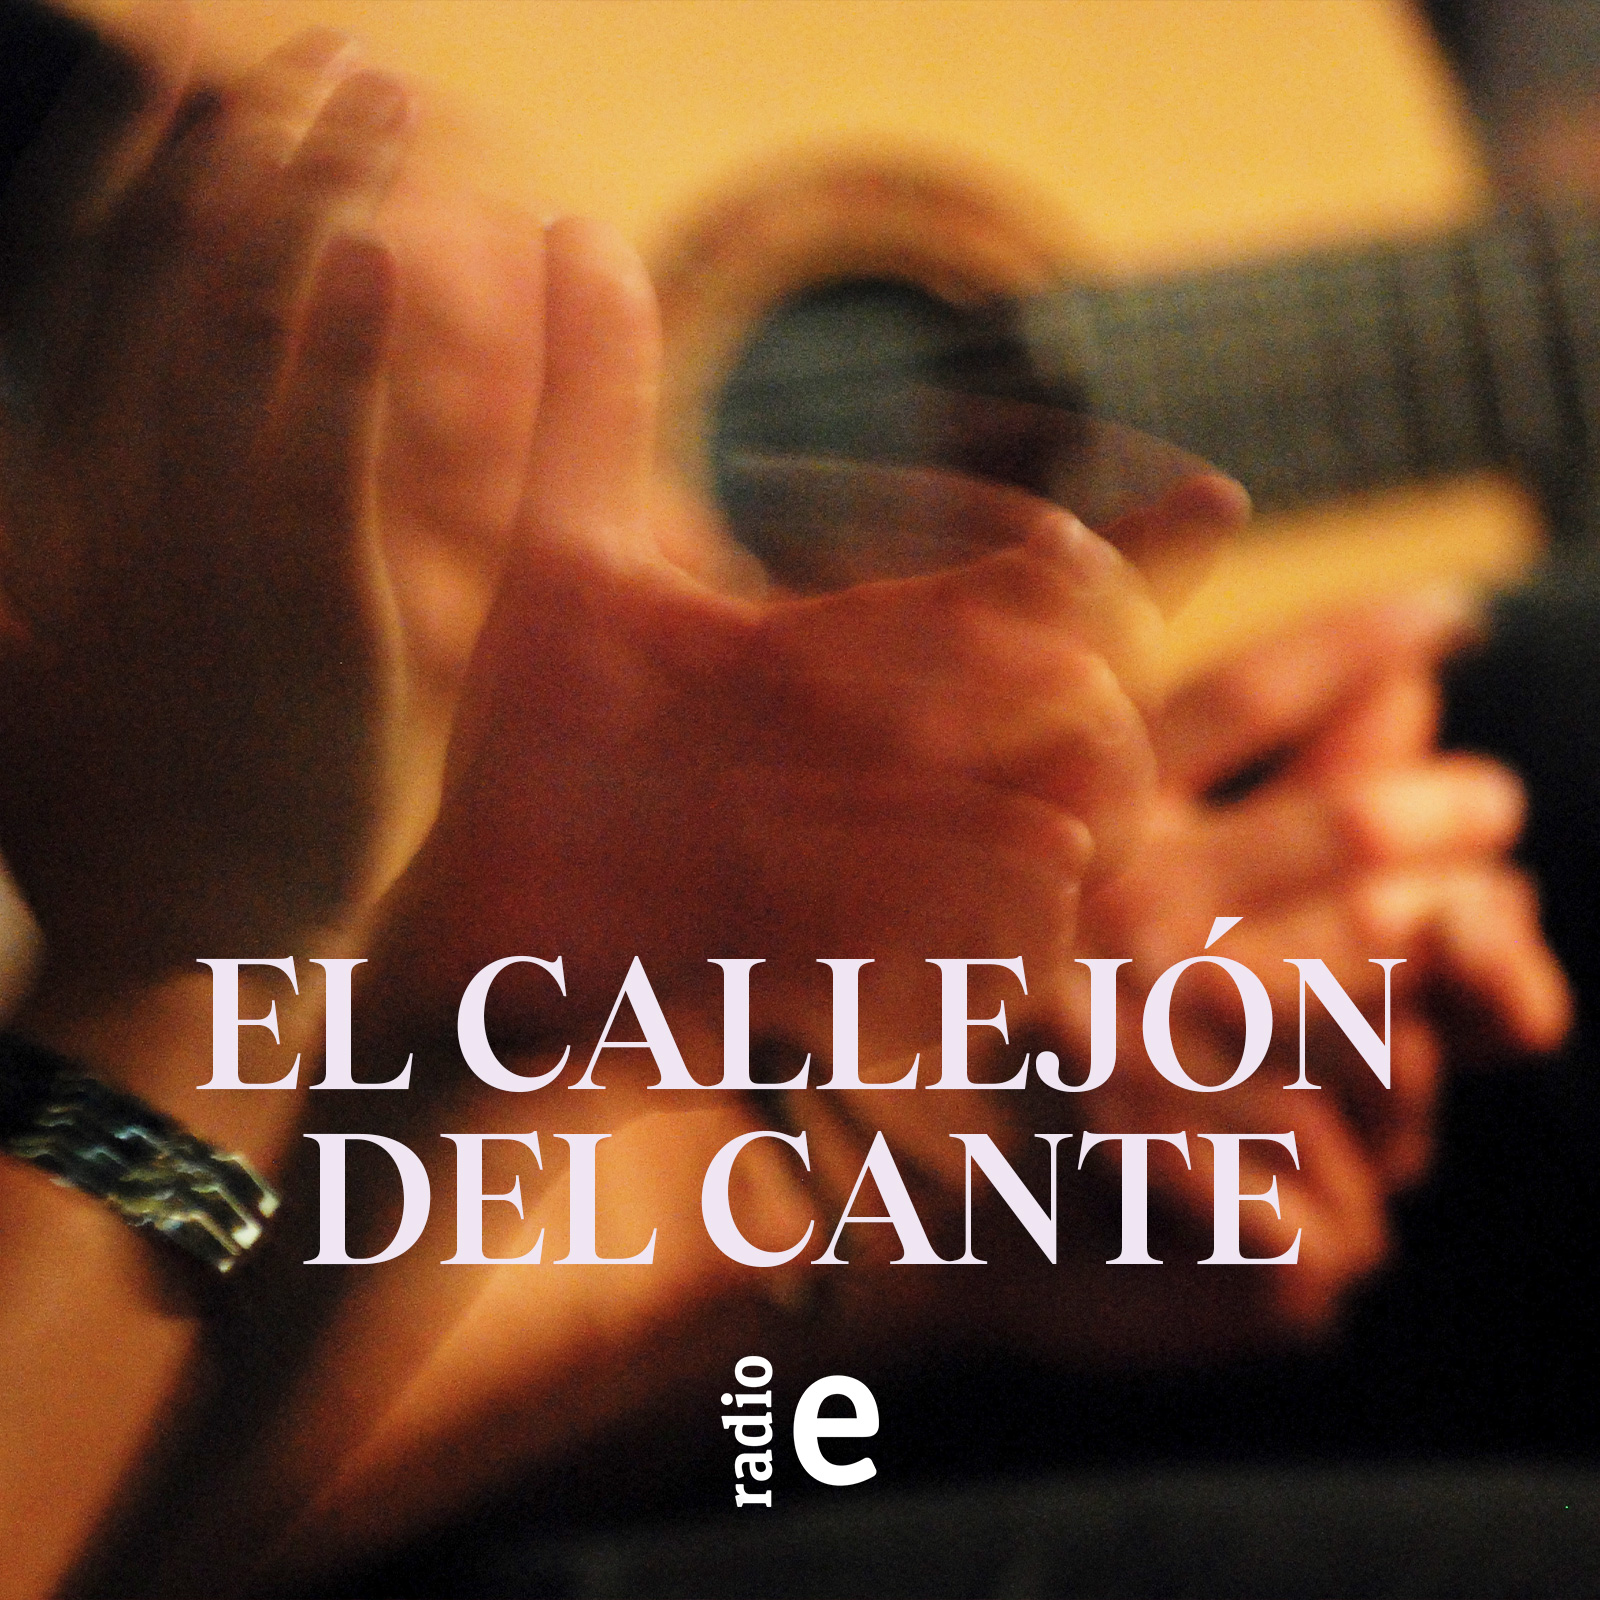 El callejón del cante - Flamencas en ruta - 12/07/14